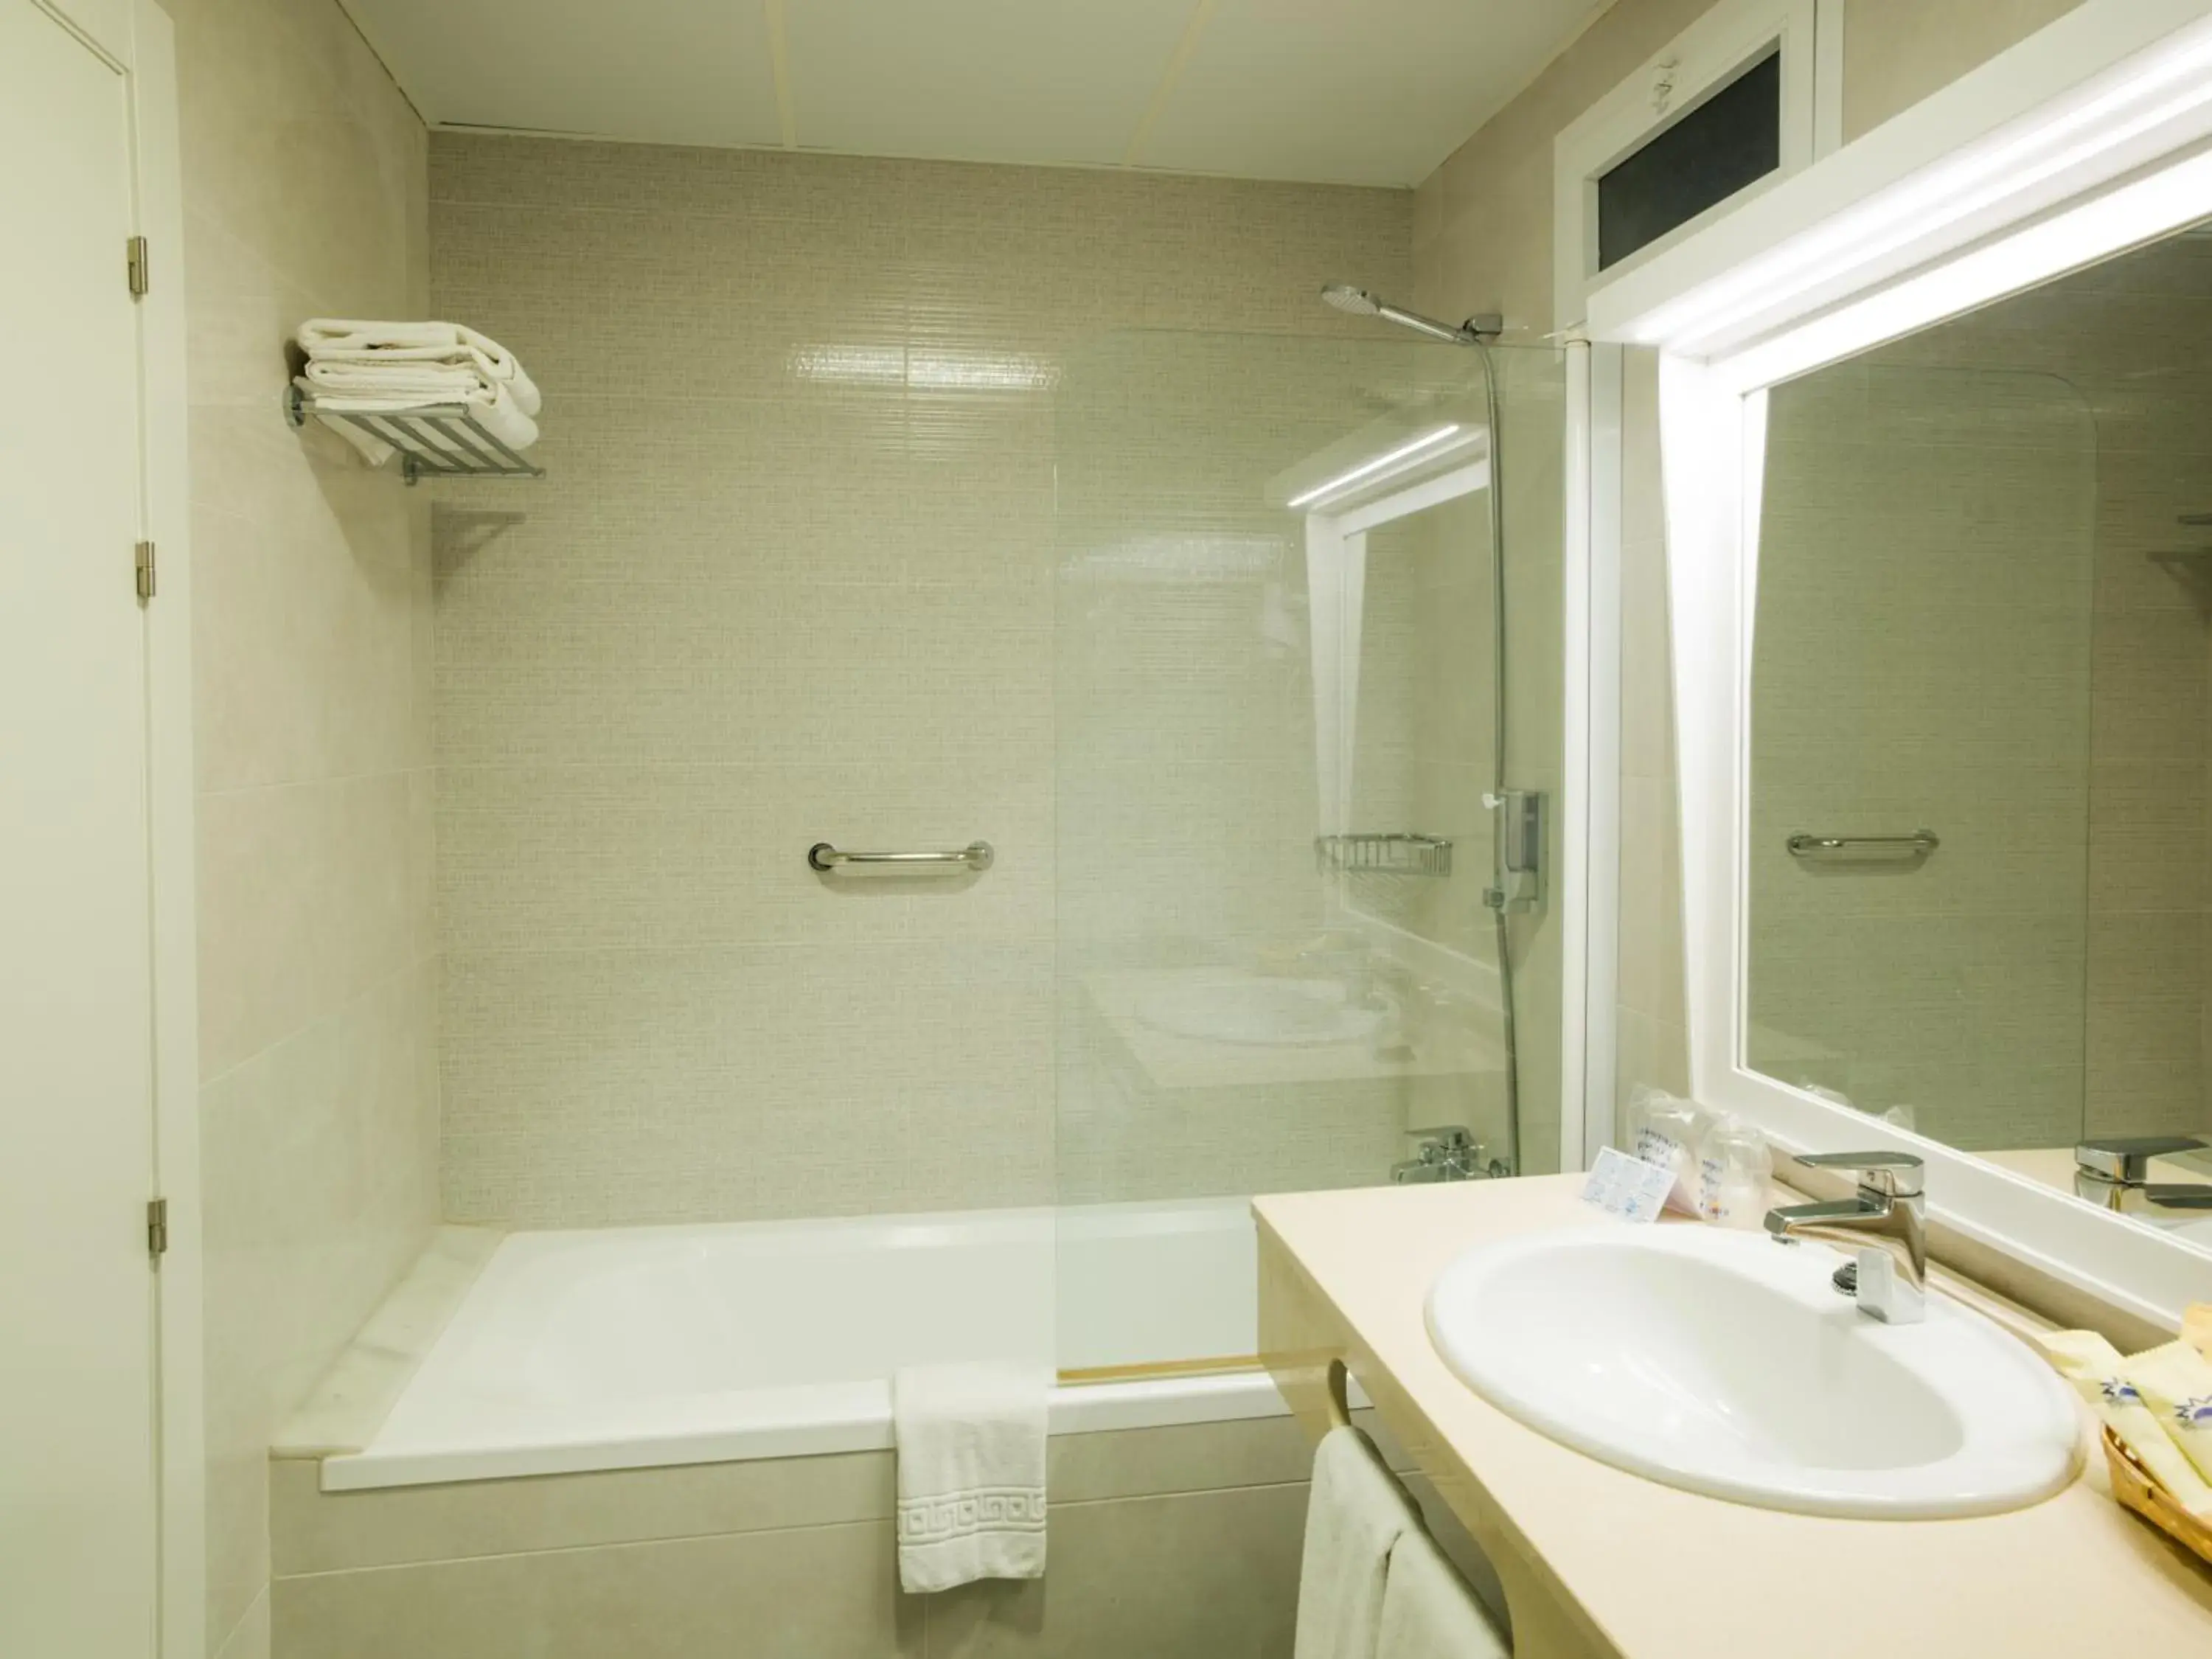 Bedroom, Bathroom in Hotel Monarque Torreblanca